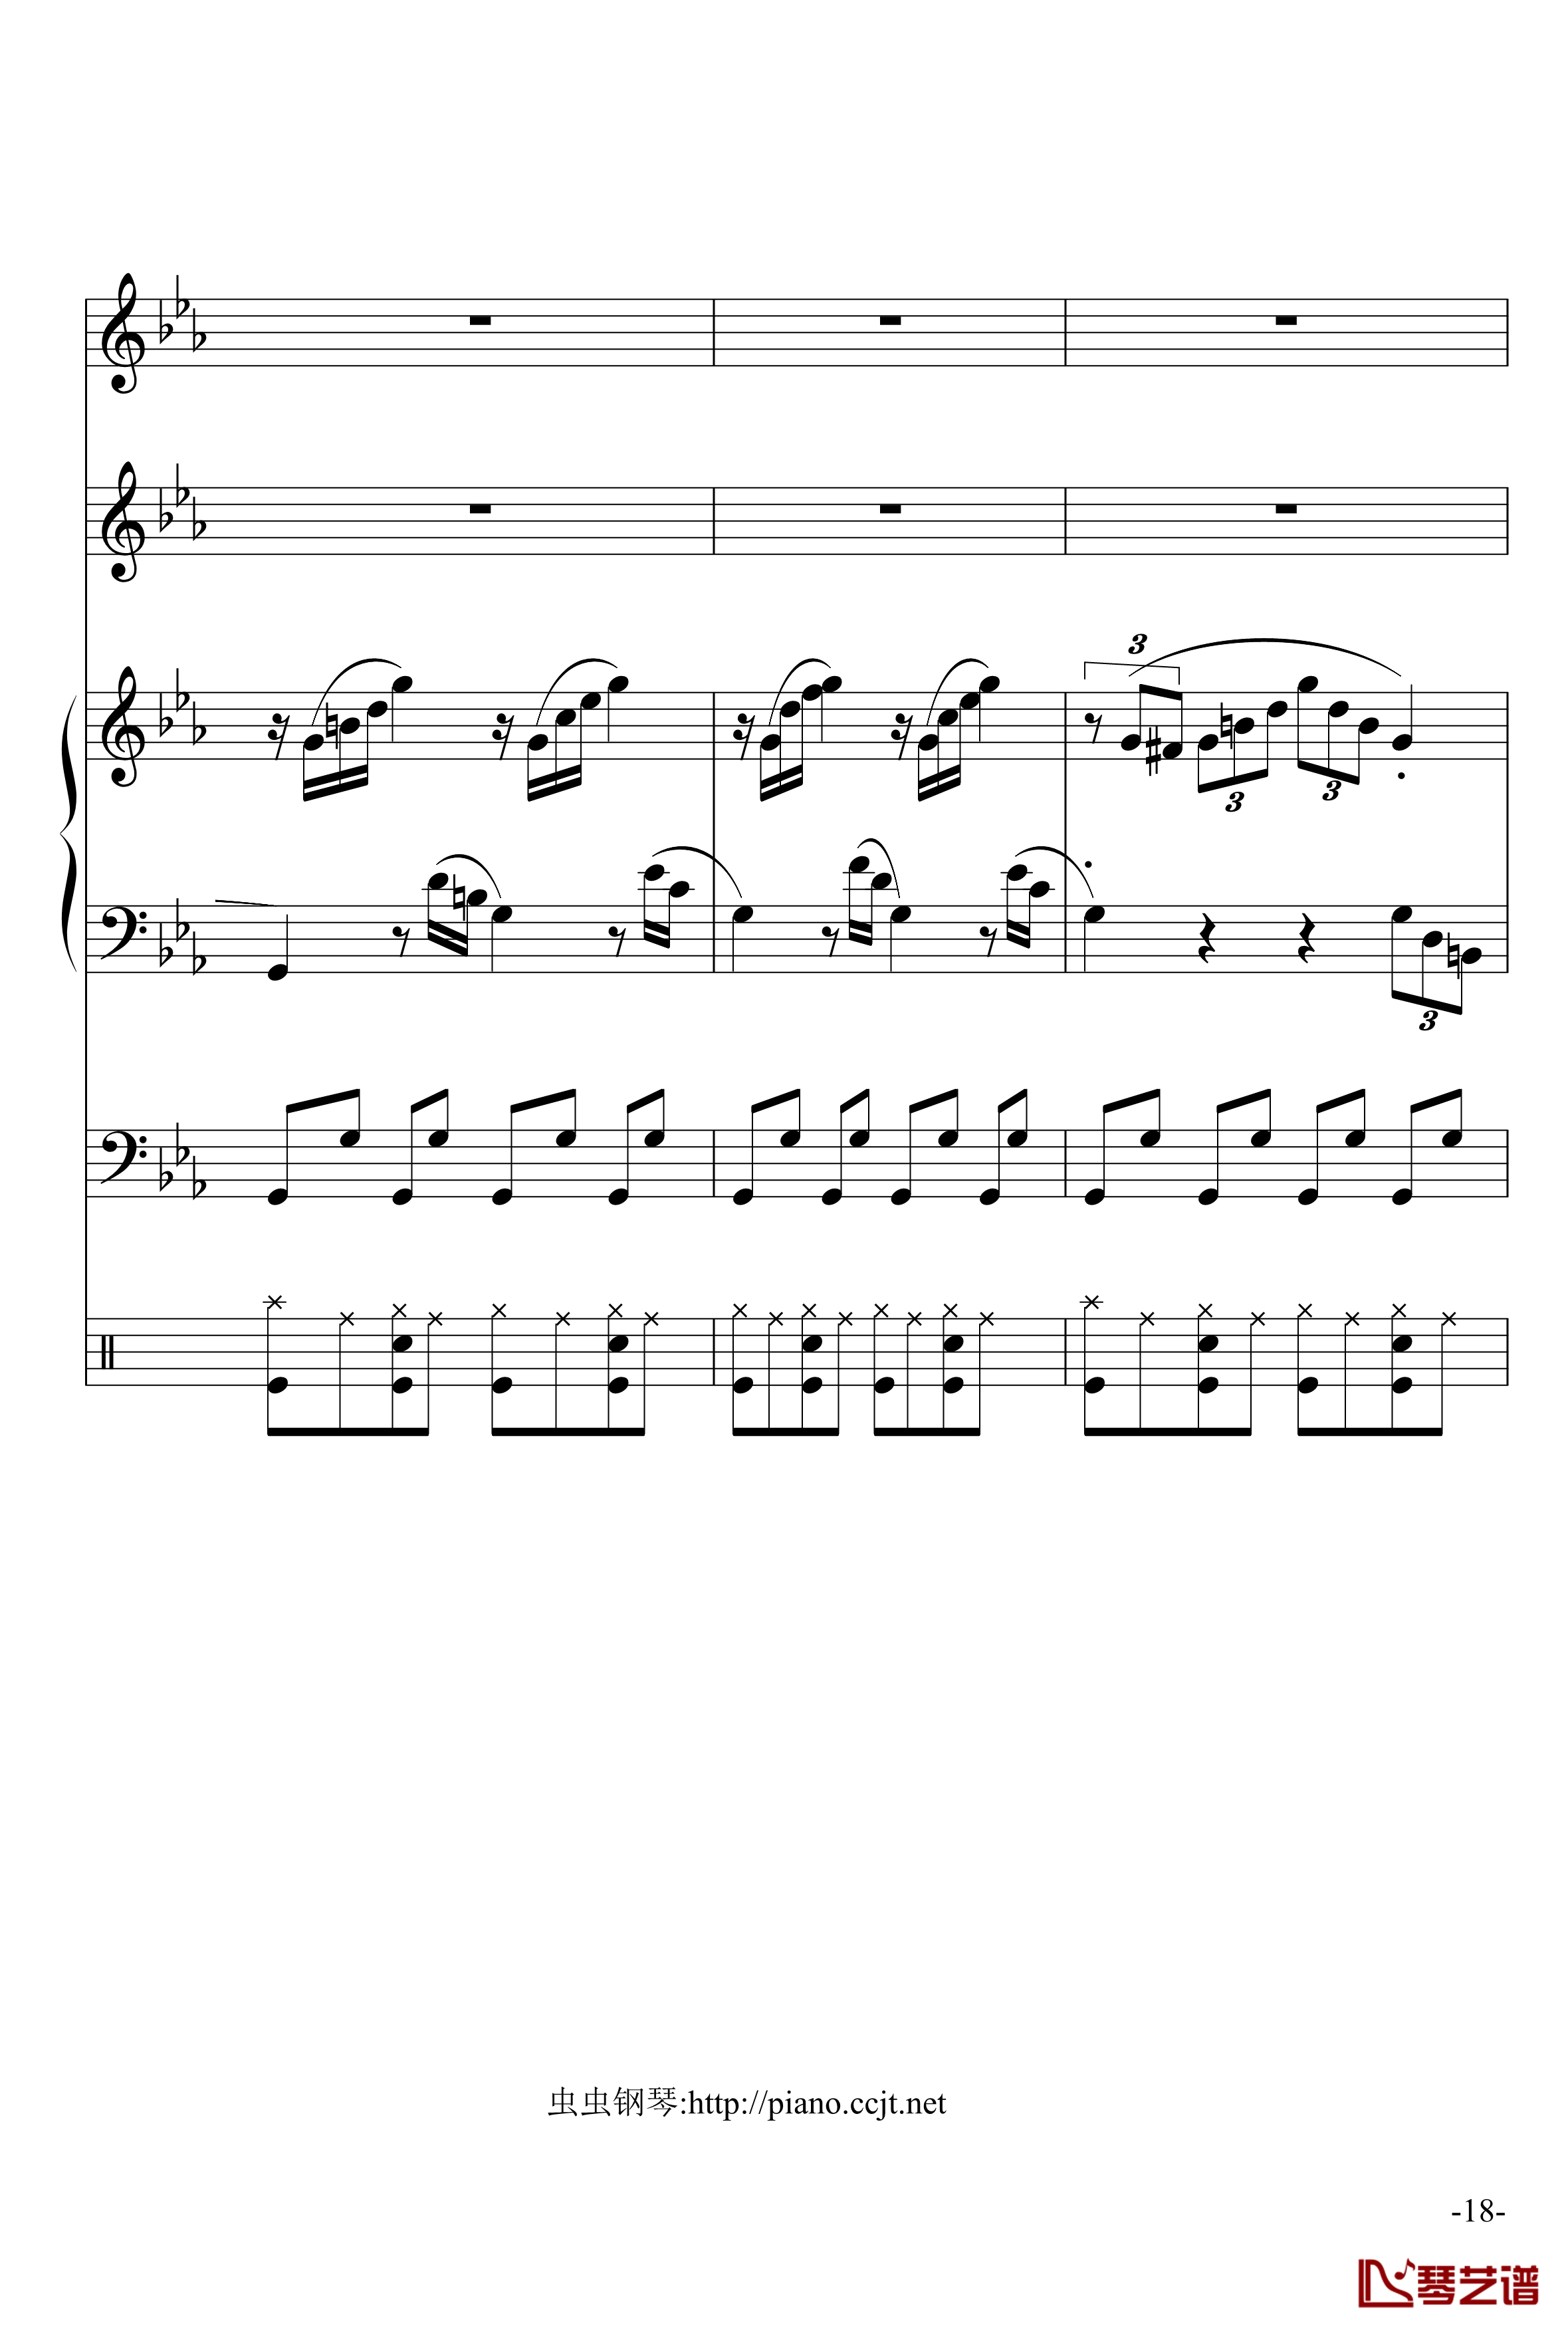 悲怆奏鸣曲钢琴谱-加小乐队-贝多芬-beethoven18